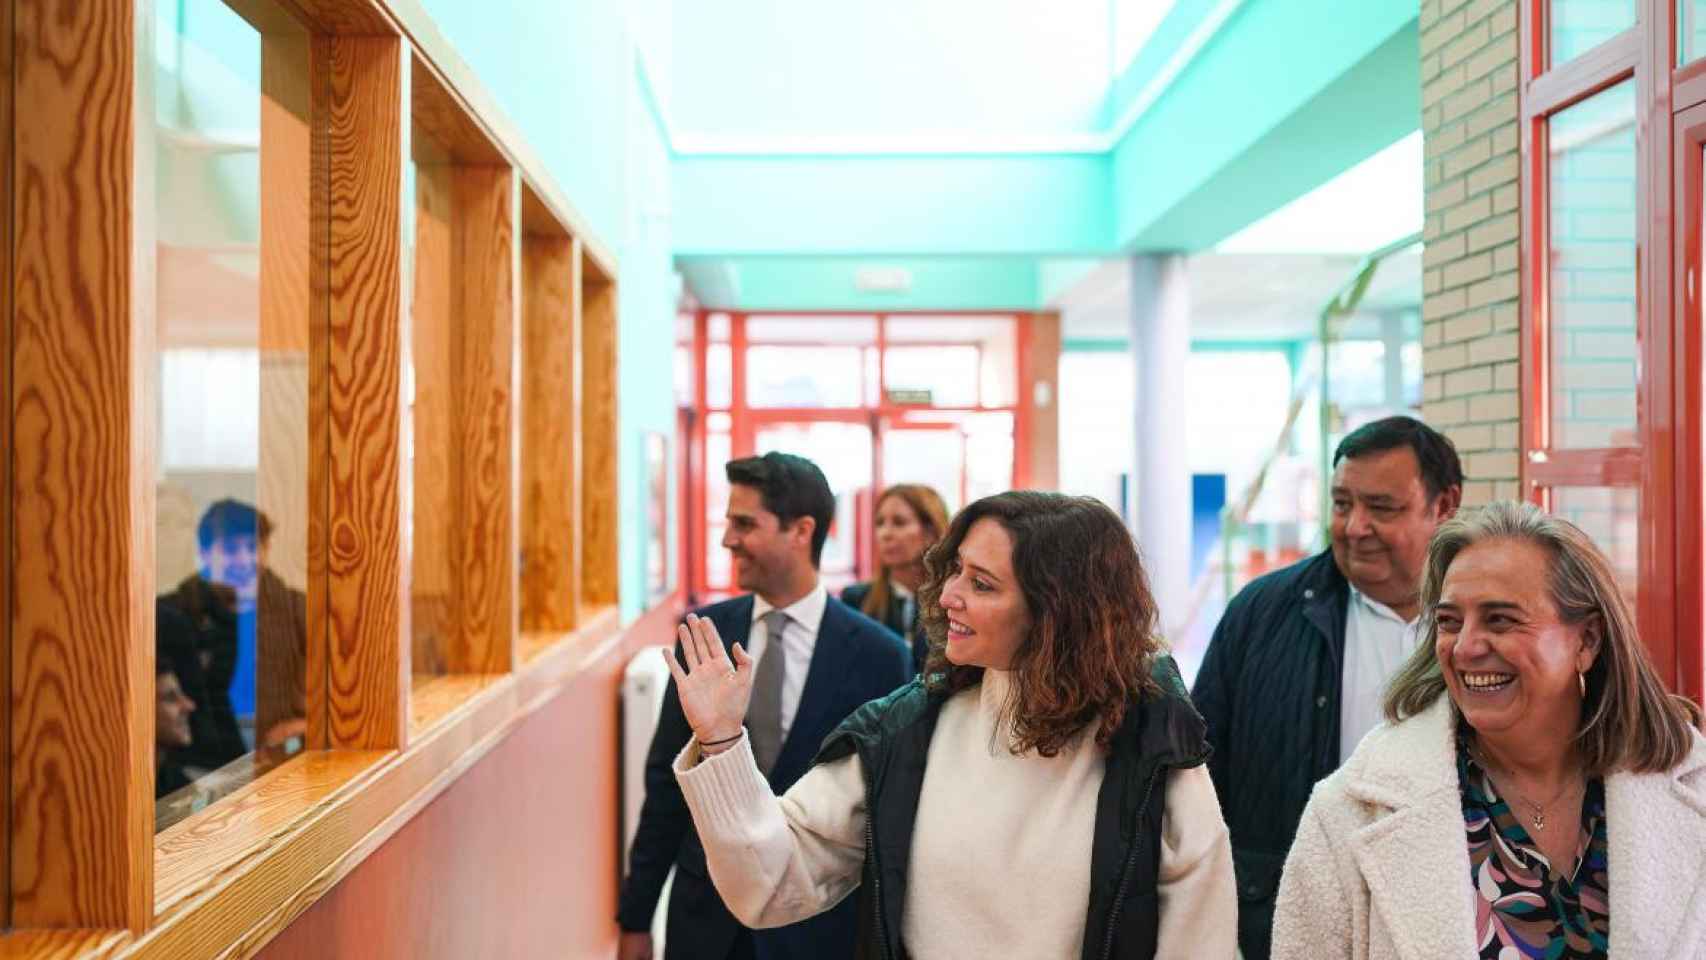 Díaz Ayuso en su visita al colegio público de Educación Infantil, Primaria y Secundaria Vicente Aleixandre, en Miraflores de la Sierra.